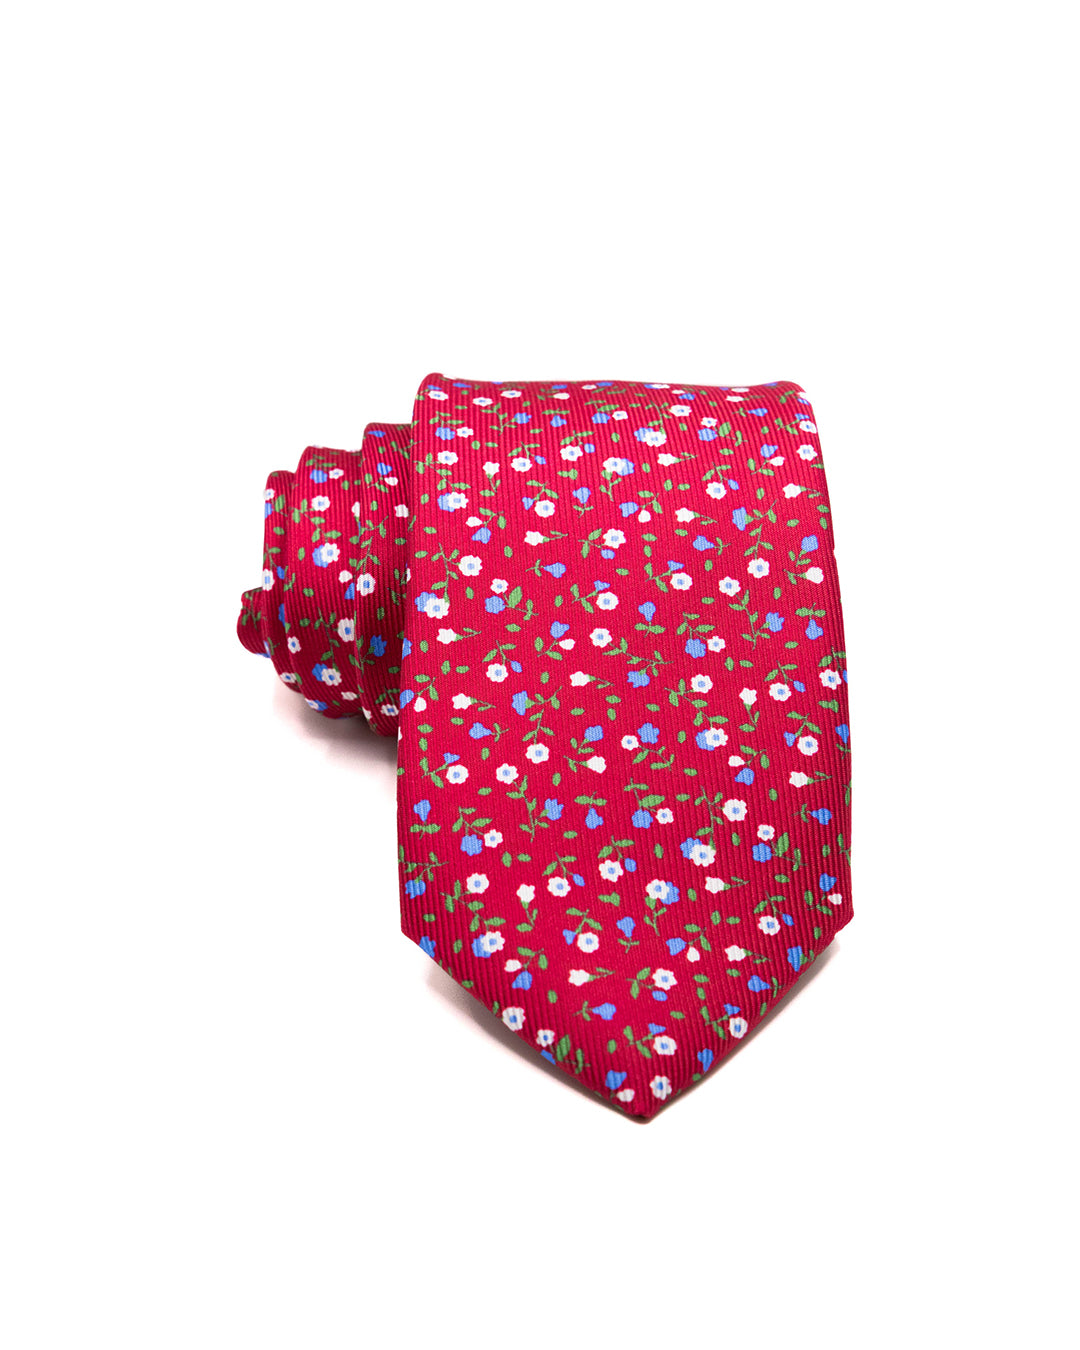 Cravatta - in seta twill rossa fantasia fiori